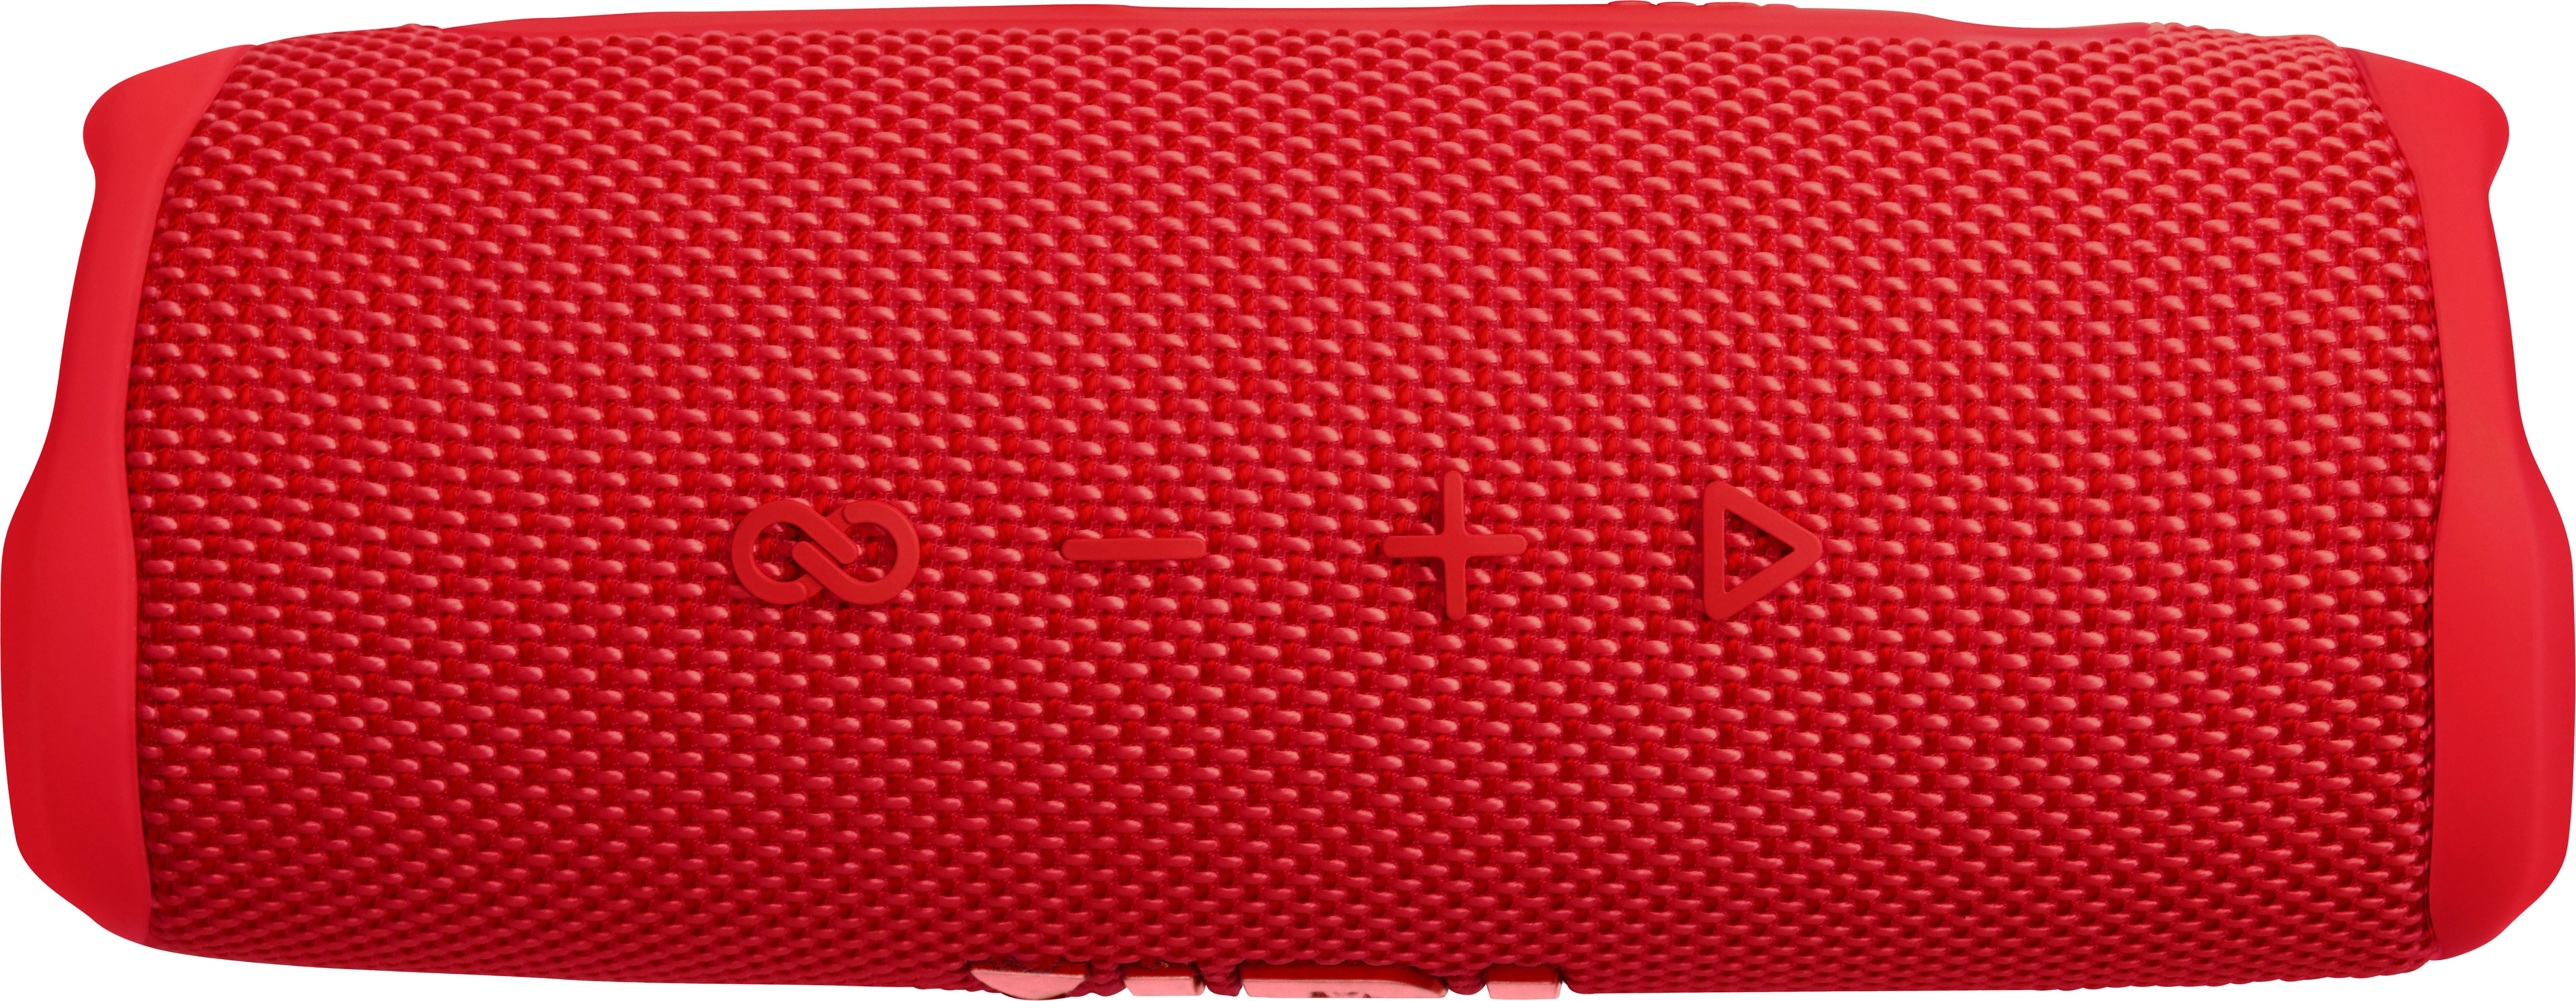 JBL FLIP6 Portable Waterproof Speaker Red JBLFLIP6REDAM - Best Buy